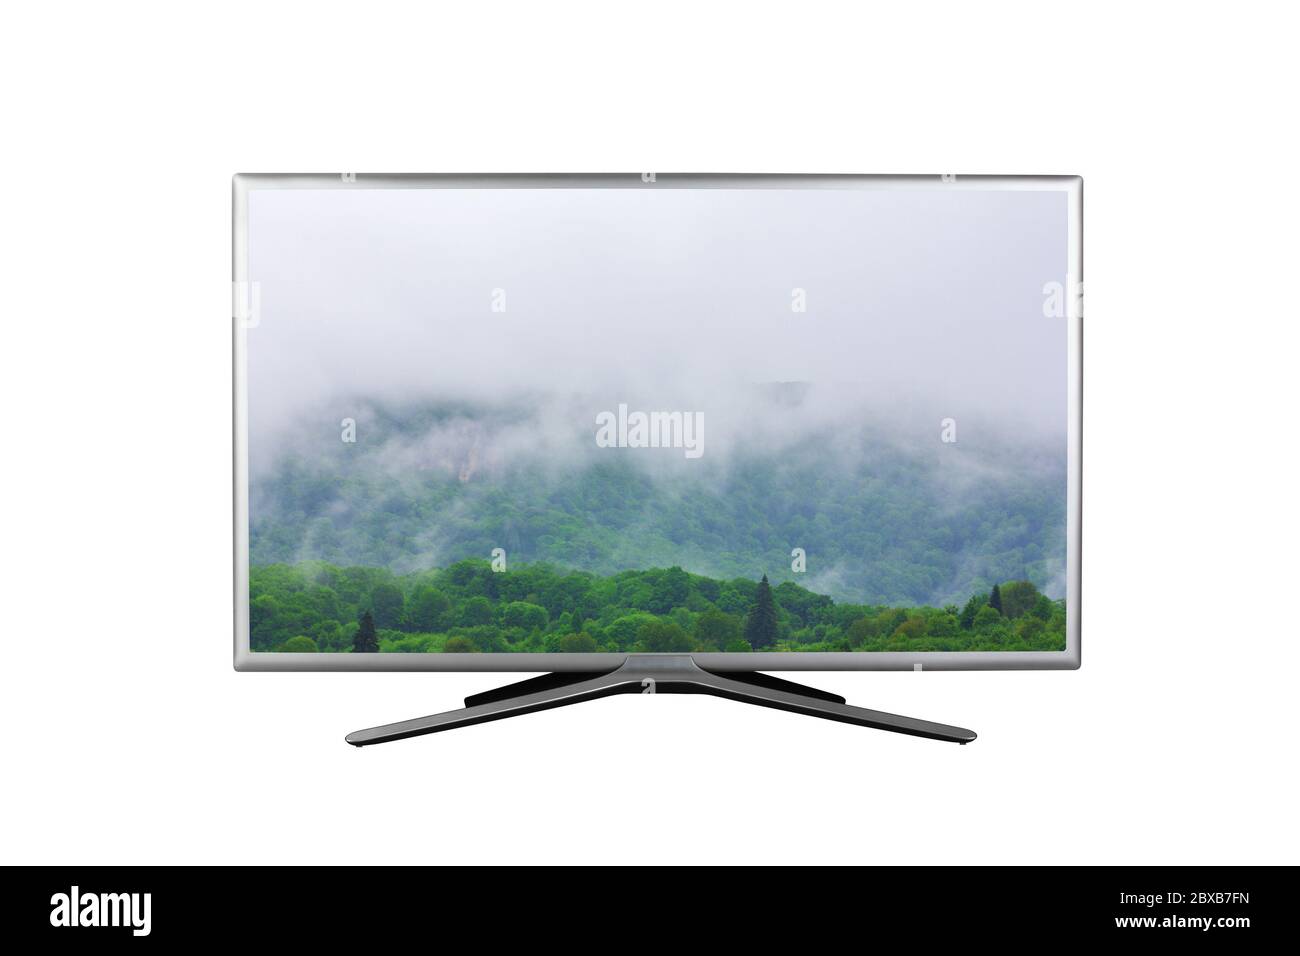 4K-Monitor oder Fernseher mit einer trüben, nebligen Landschaft im Frühling oder Sommer auf dem Bildschirm isoliert auf weißem Hintergrund Stockfoto